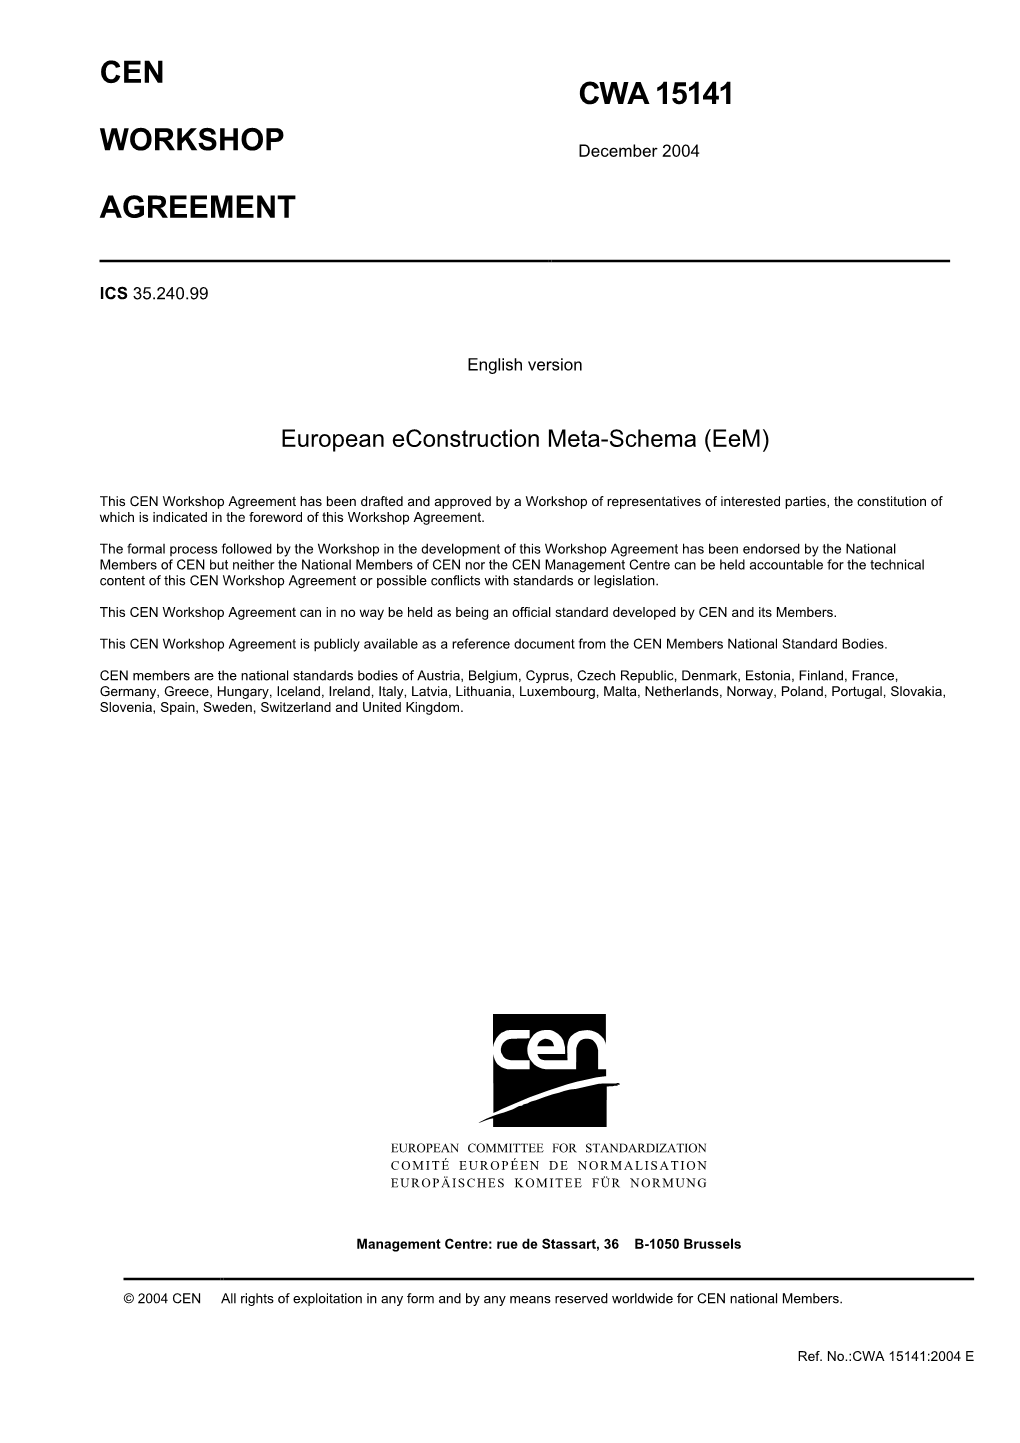 Cen Workshop Agreement Cwa 15141